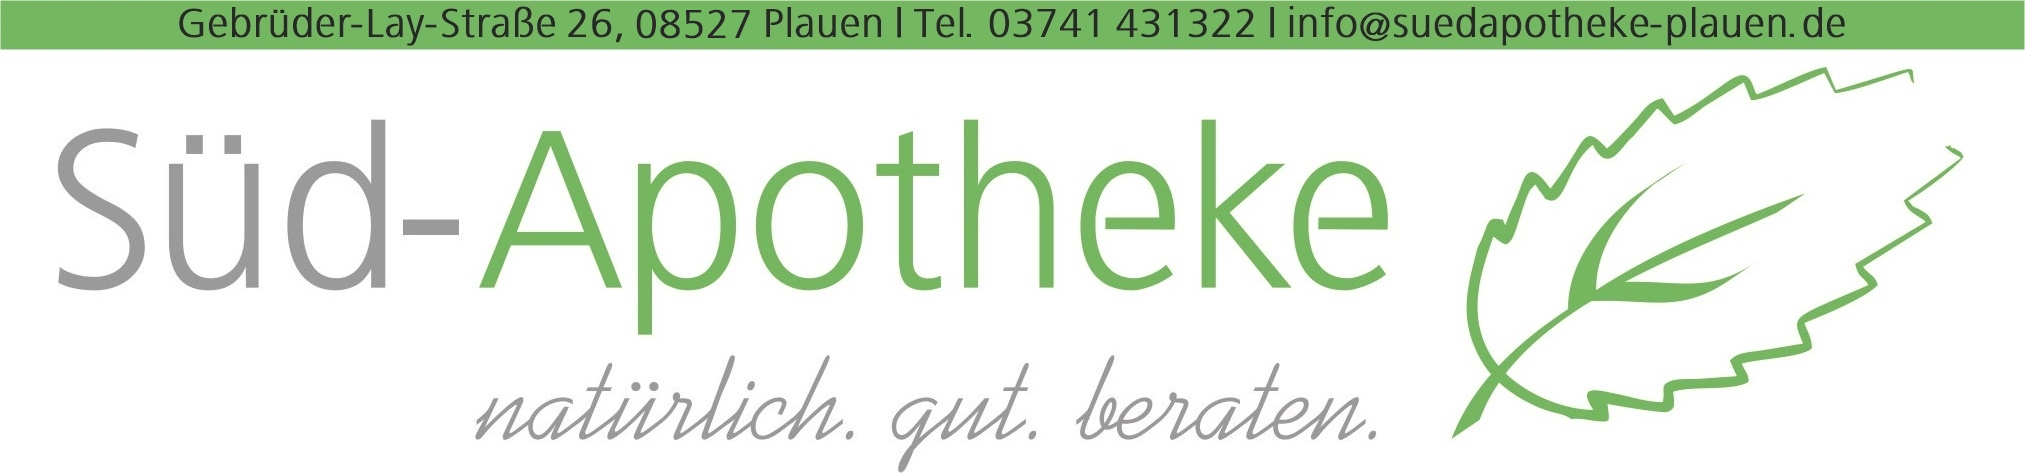 Süd-Apotheke Plauen Logo